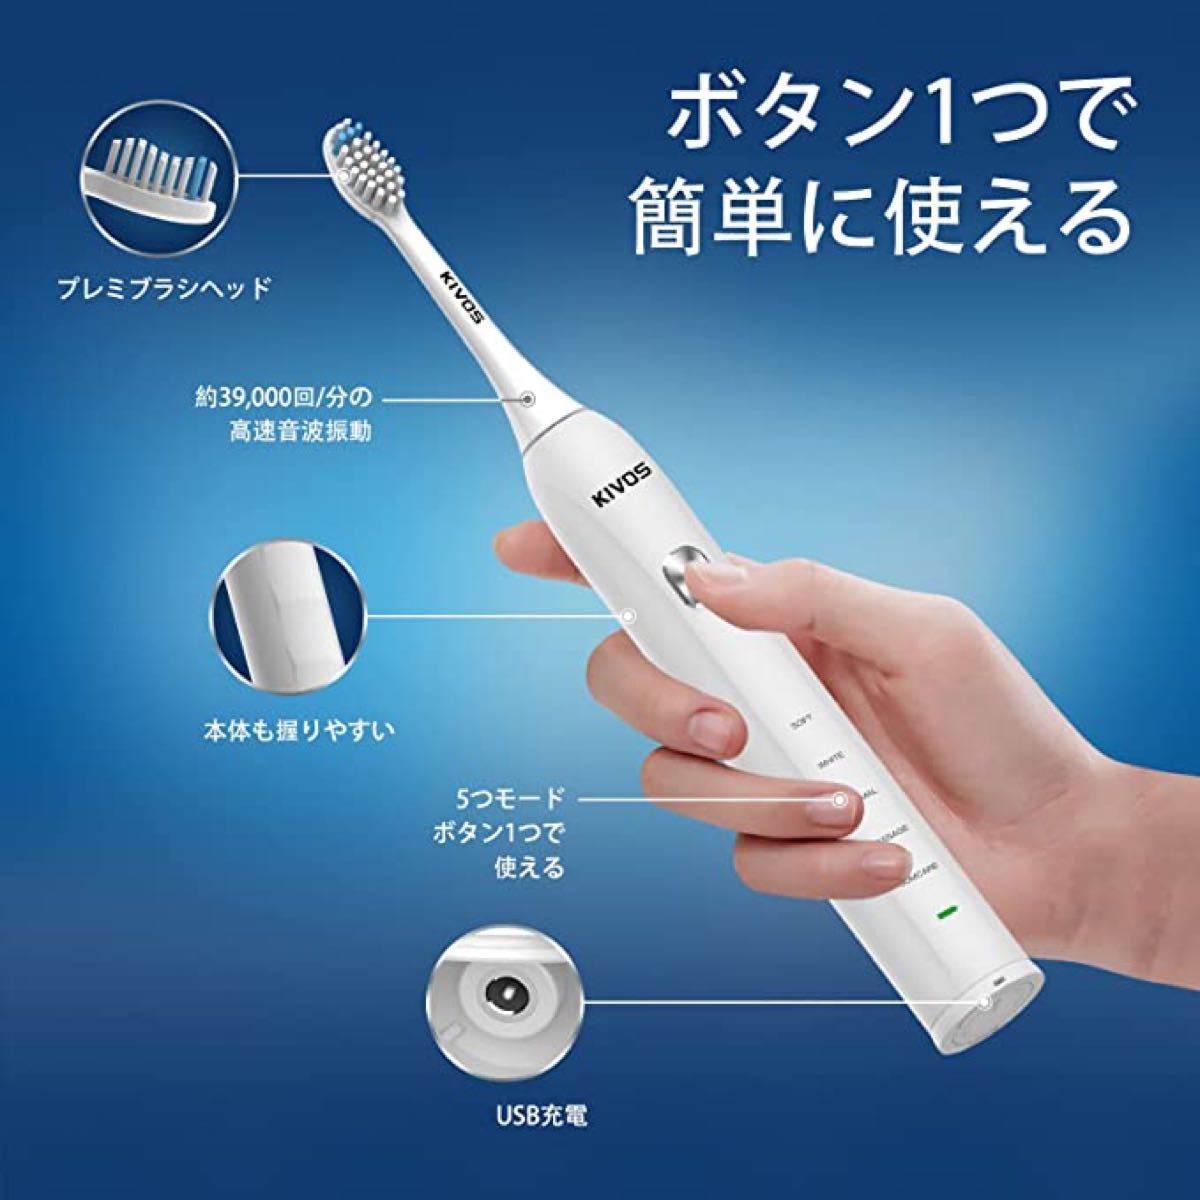 【即日発送】電動歯ブラシ KiVOS 超音波歯ブラシ ソニック 6本替えブラシ